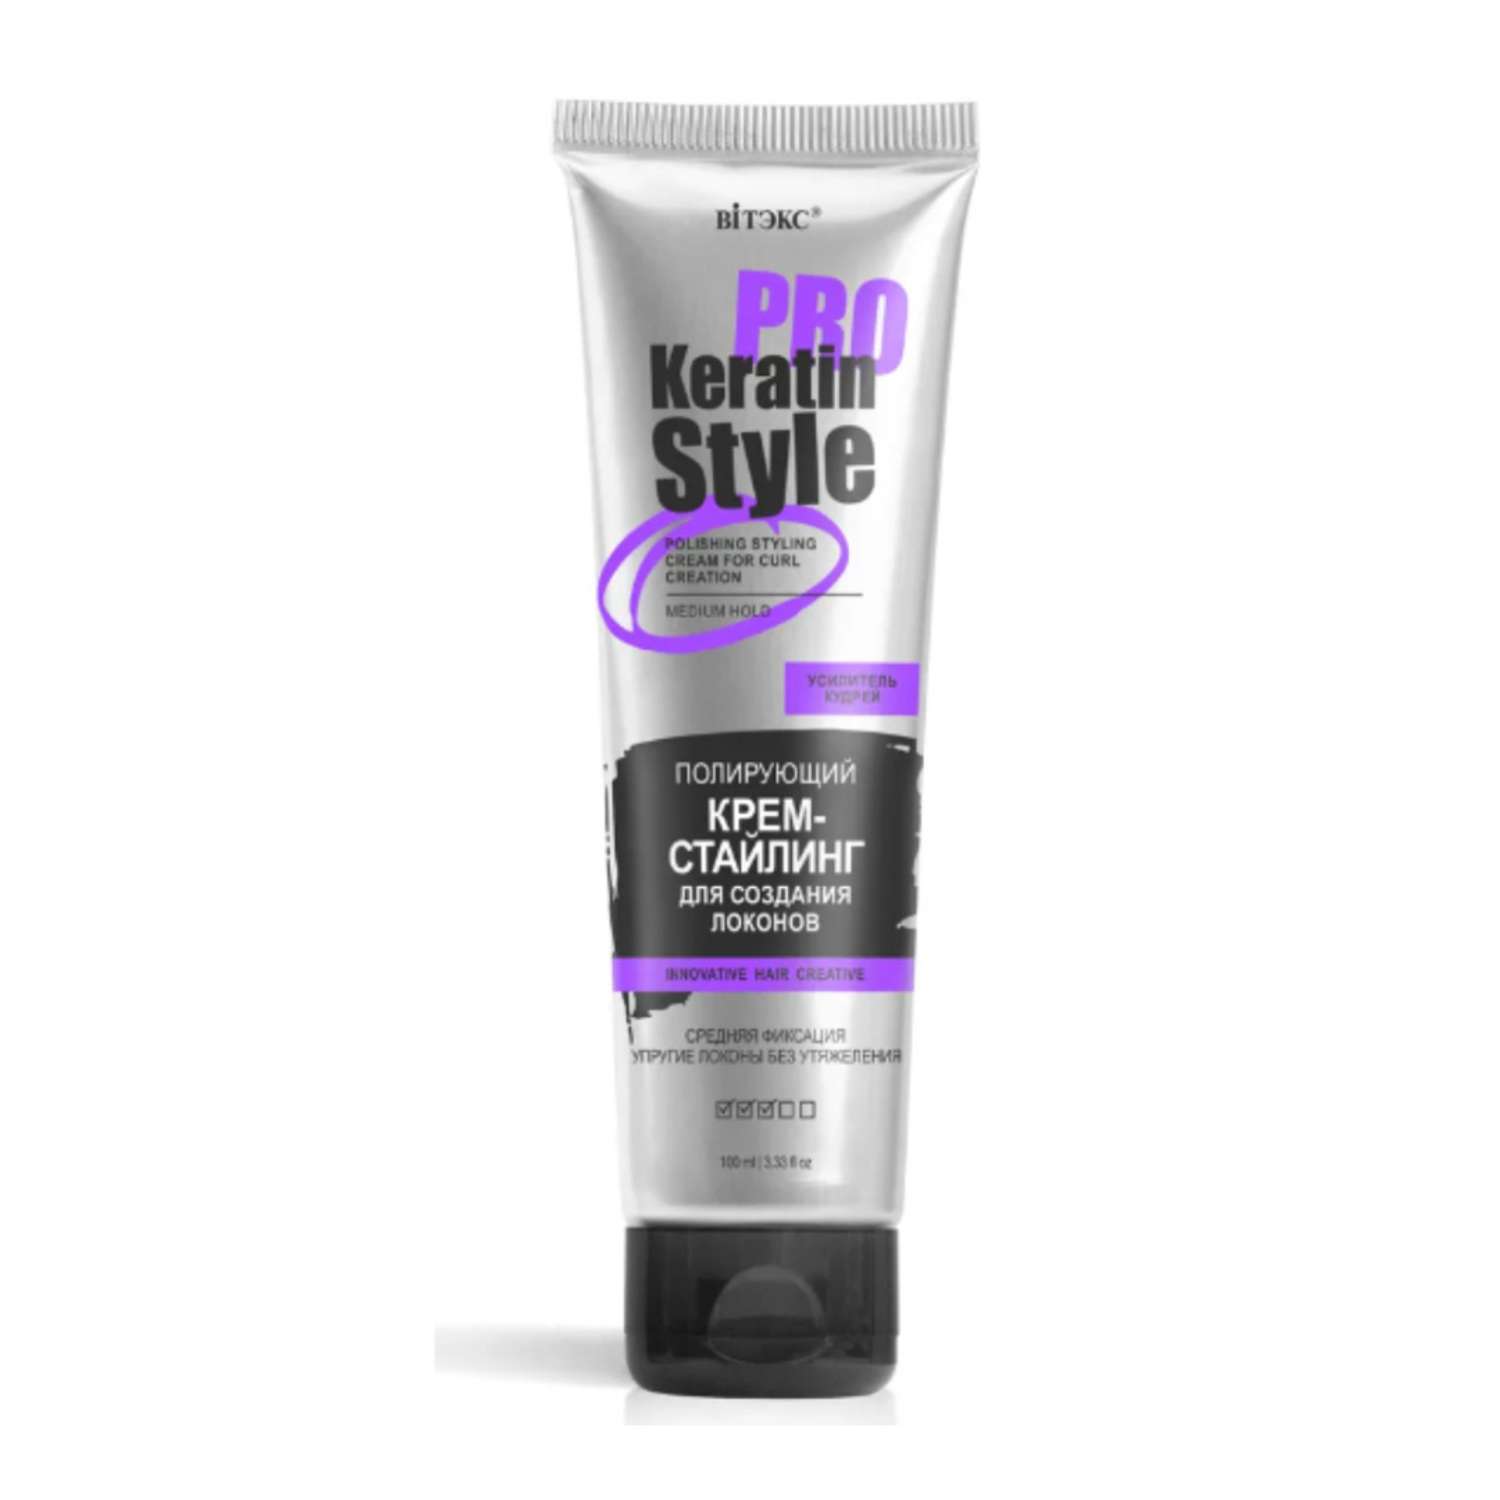 Крем для волос ВИТЭКС Keratin Pro Style стайлинг для создания локонов средней фиксации 100 мл - фото 1